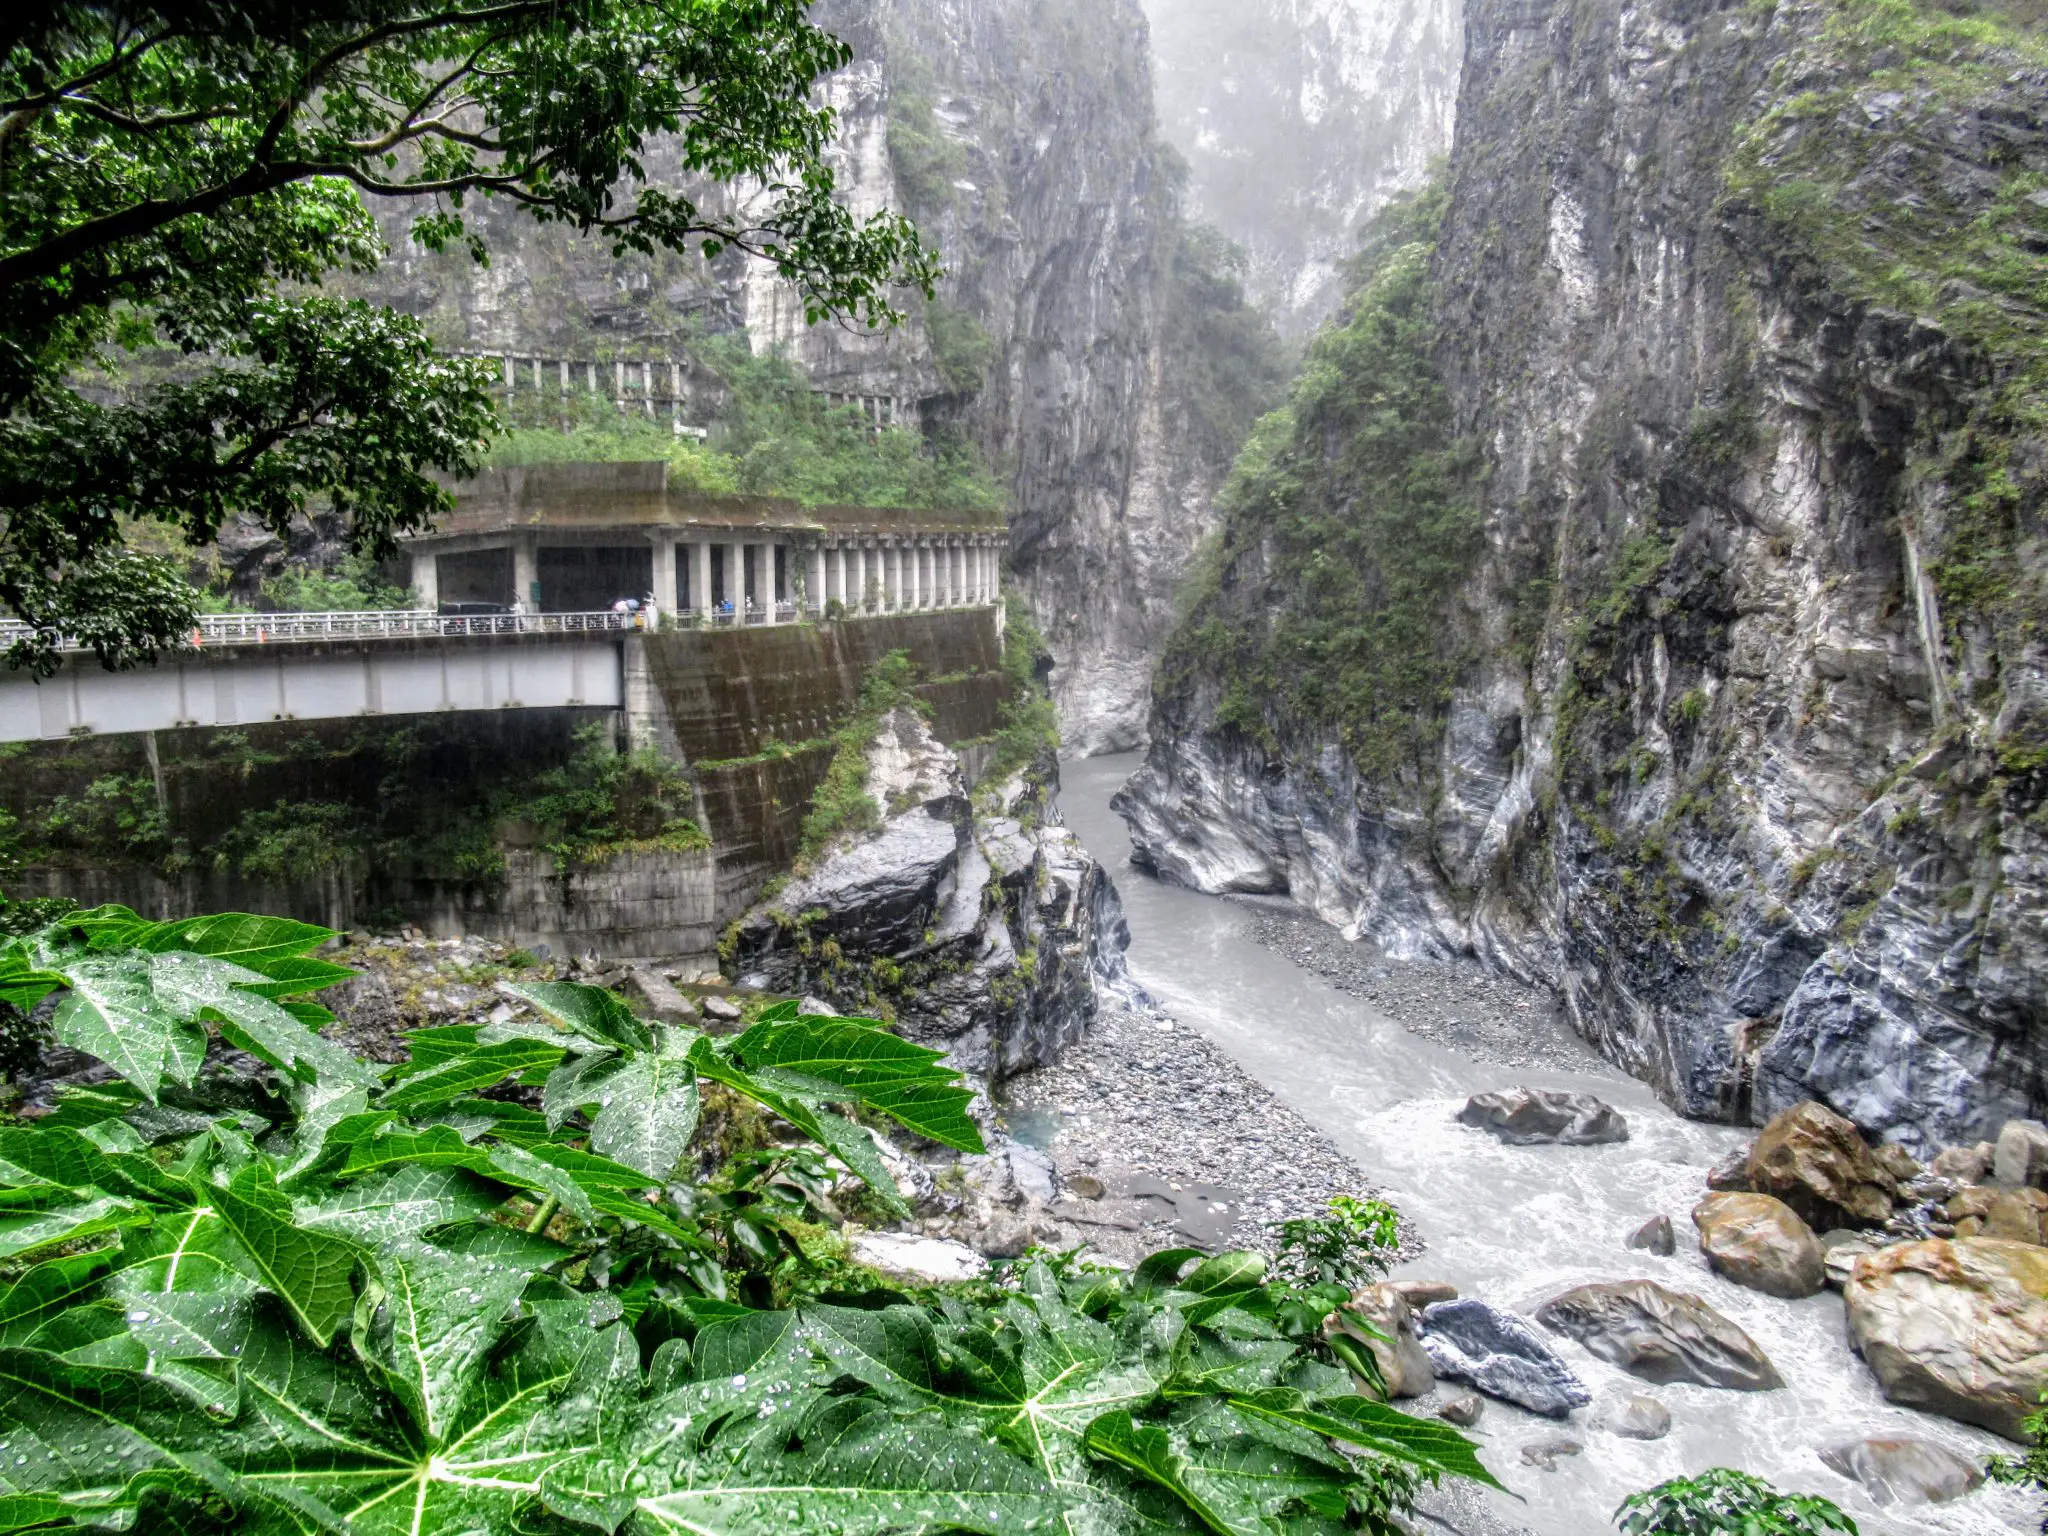 Jiuqudong (Tunnel of Nine Turns), Taroko Gorge, Taiwan